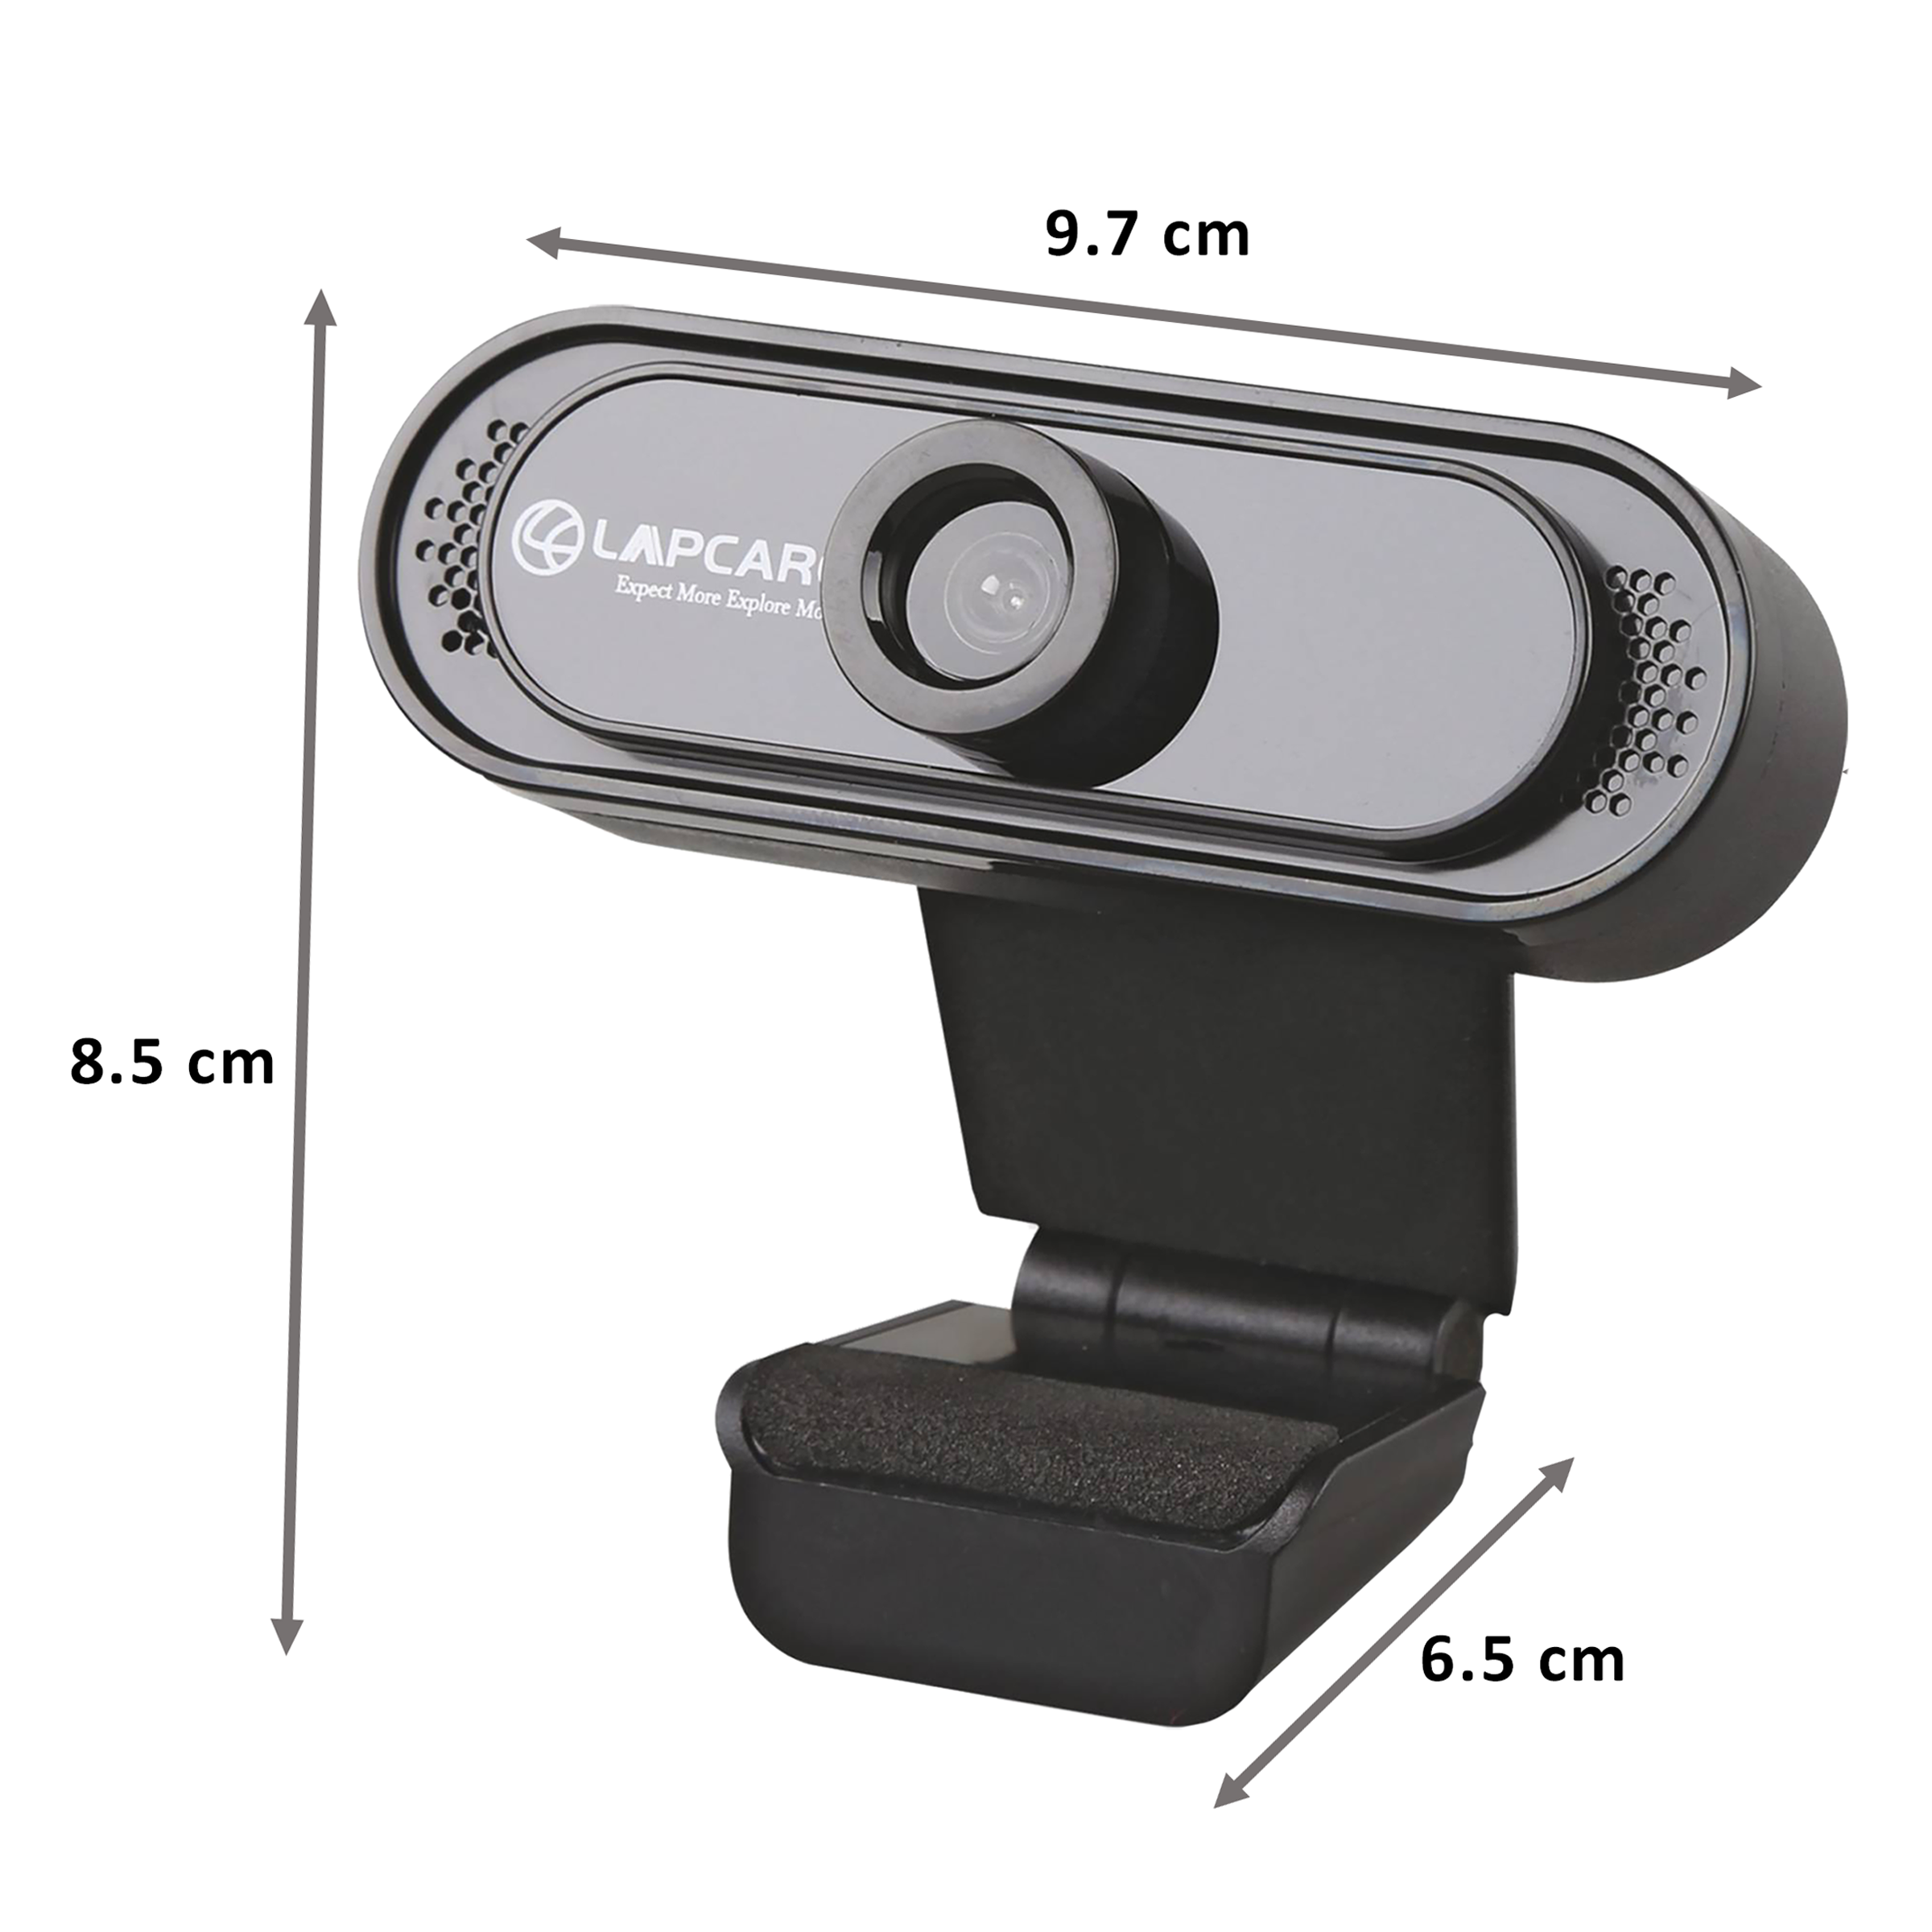 Lapcare Lapcam USB 720p HD Webcam (5 Glass Lens, LWC-042, Black)_1